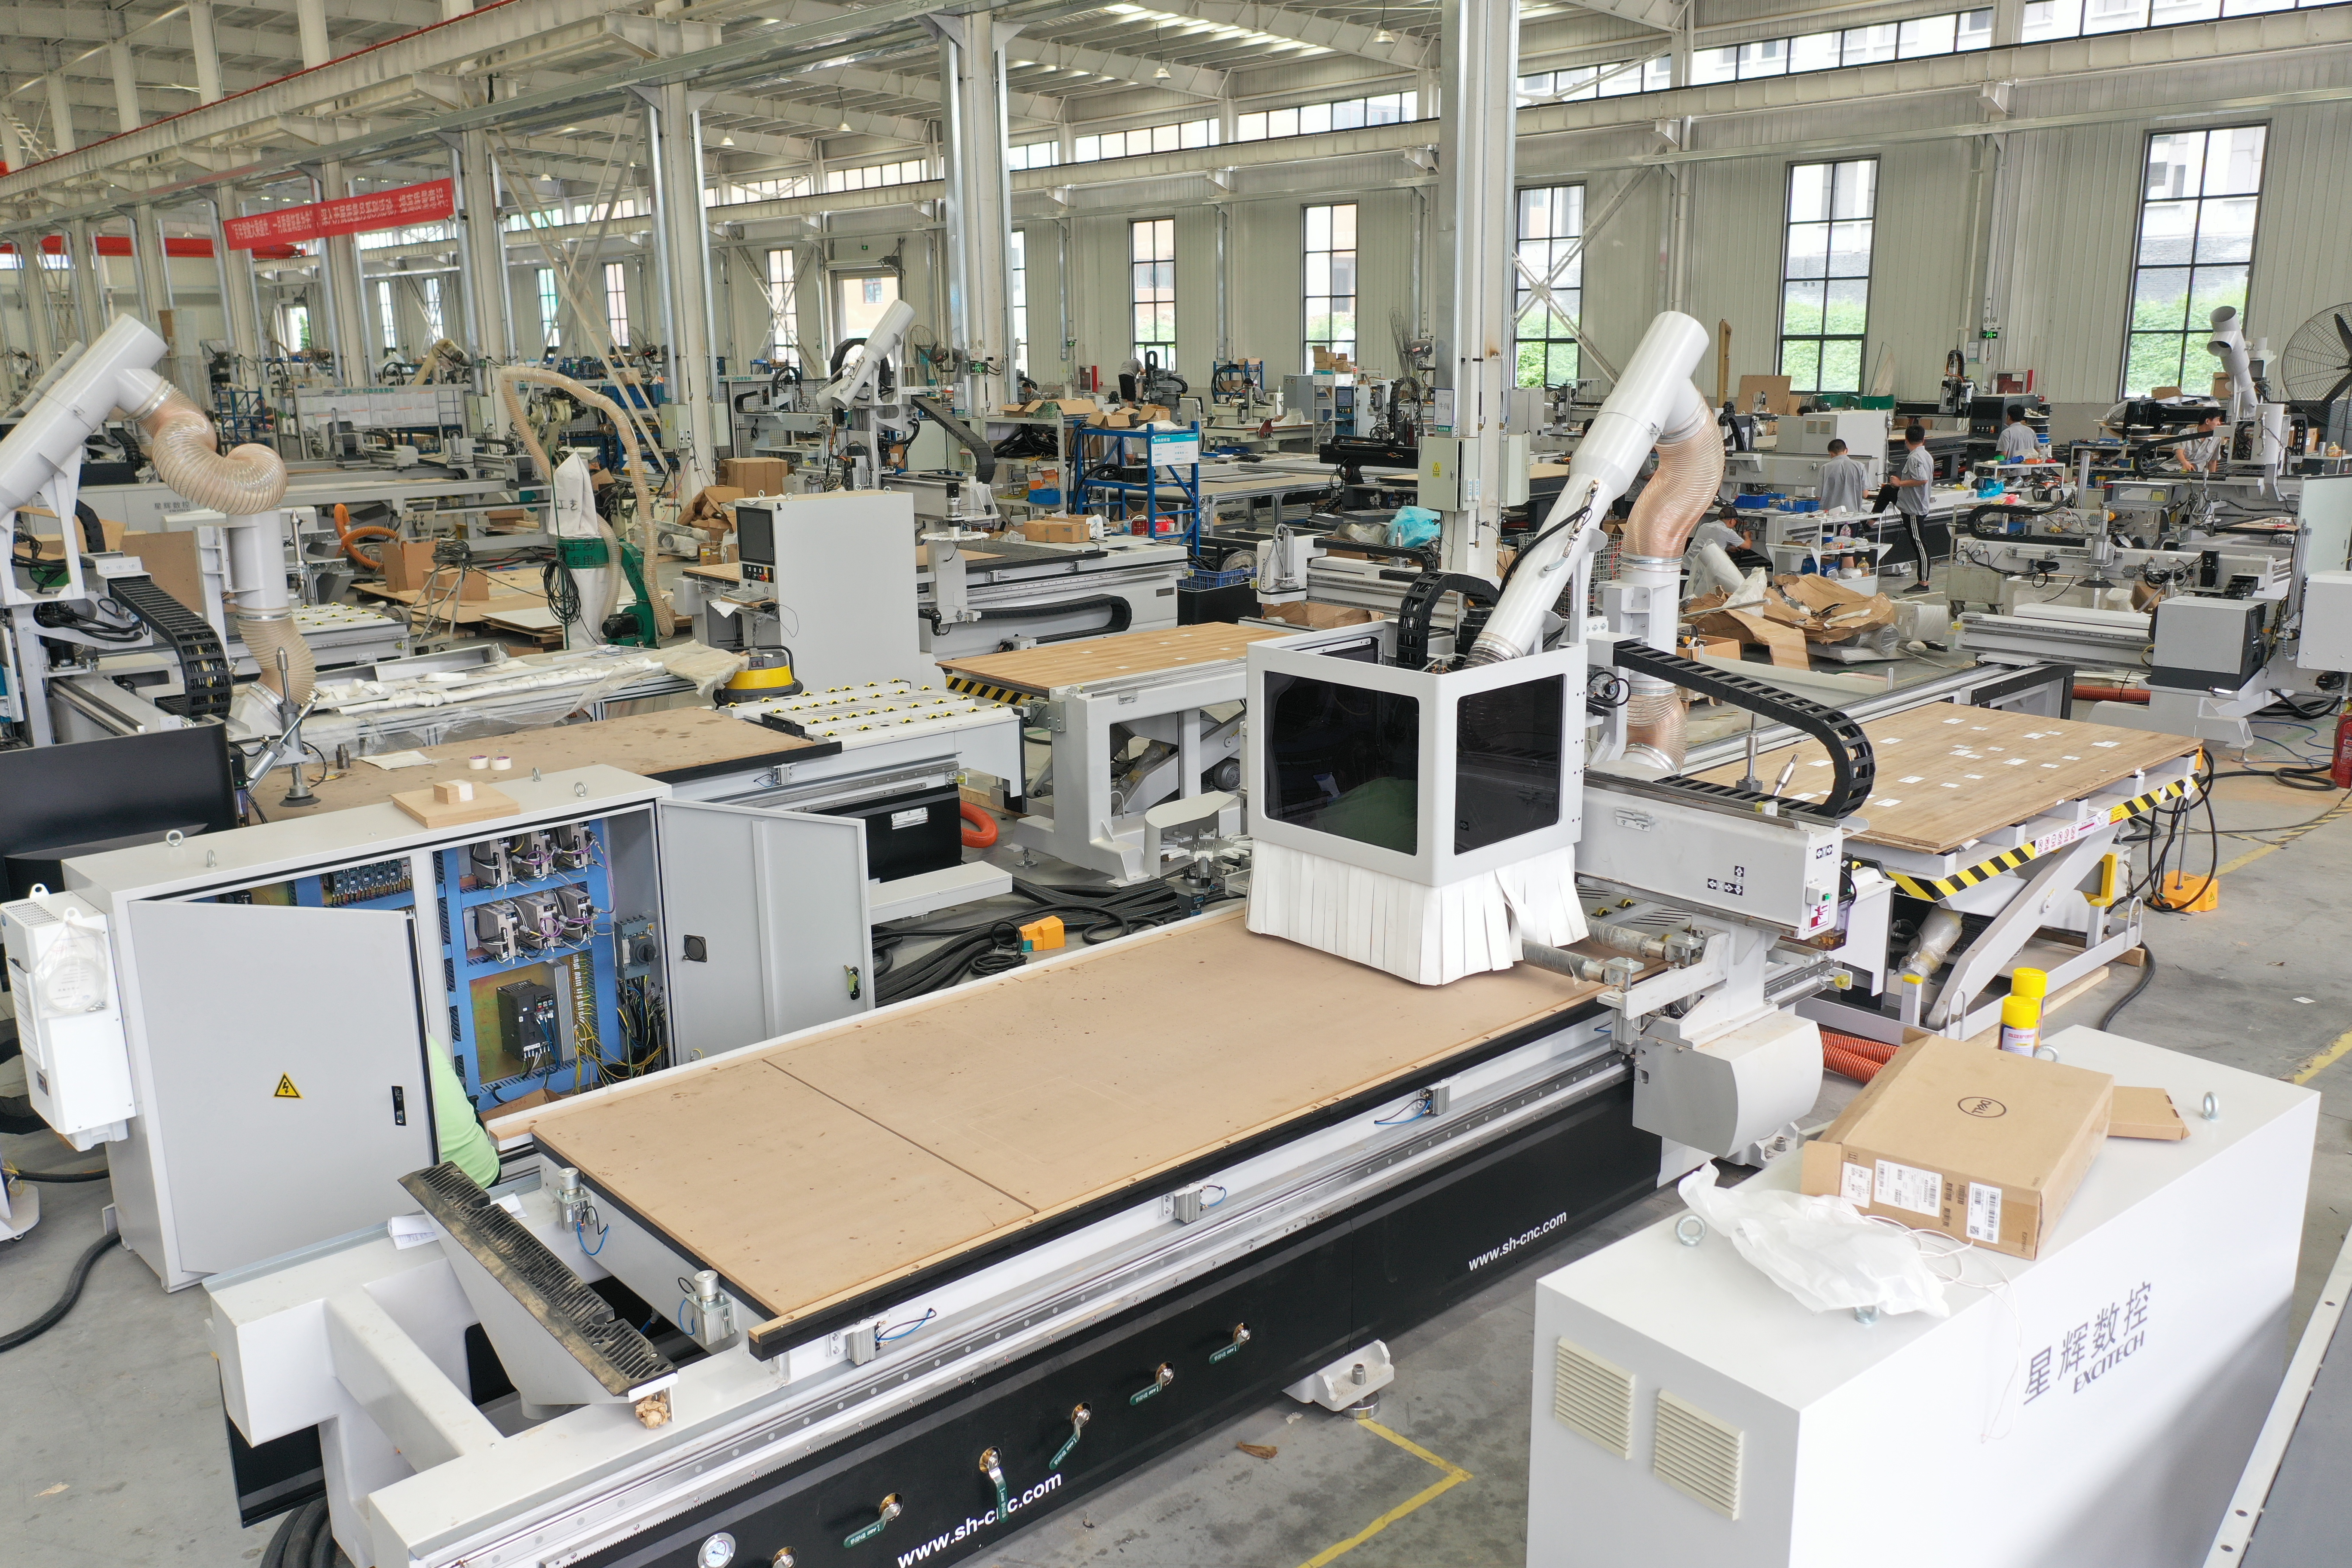 การใช้อุปกรณ์ของ EXCITECH CNC machining center กับนิตยสาร carousel tool ทำให้ Henan-DAESHIN สร้าง DASHIN HOME DESIGN FACTORY ซึ่งได้รับรางวัลในฐานะผู้นำร่องการผลิตอัจฉริยะระดับประเทศ...